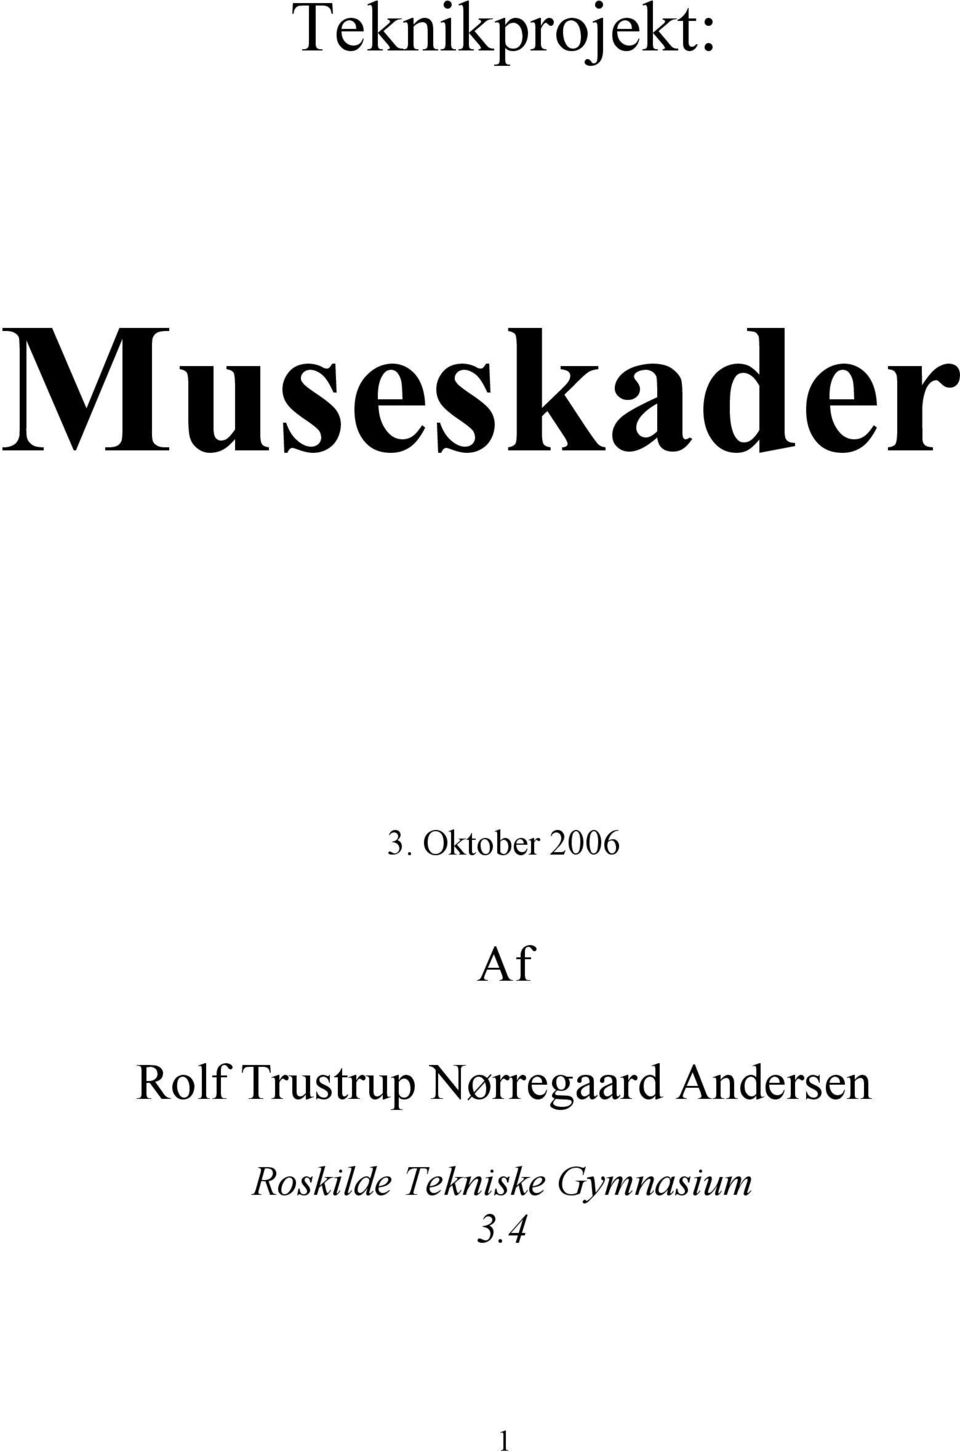 Trustrup Nørregaard